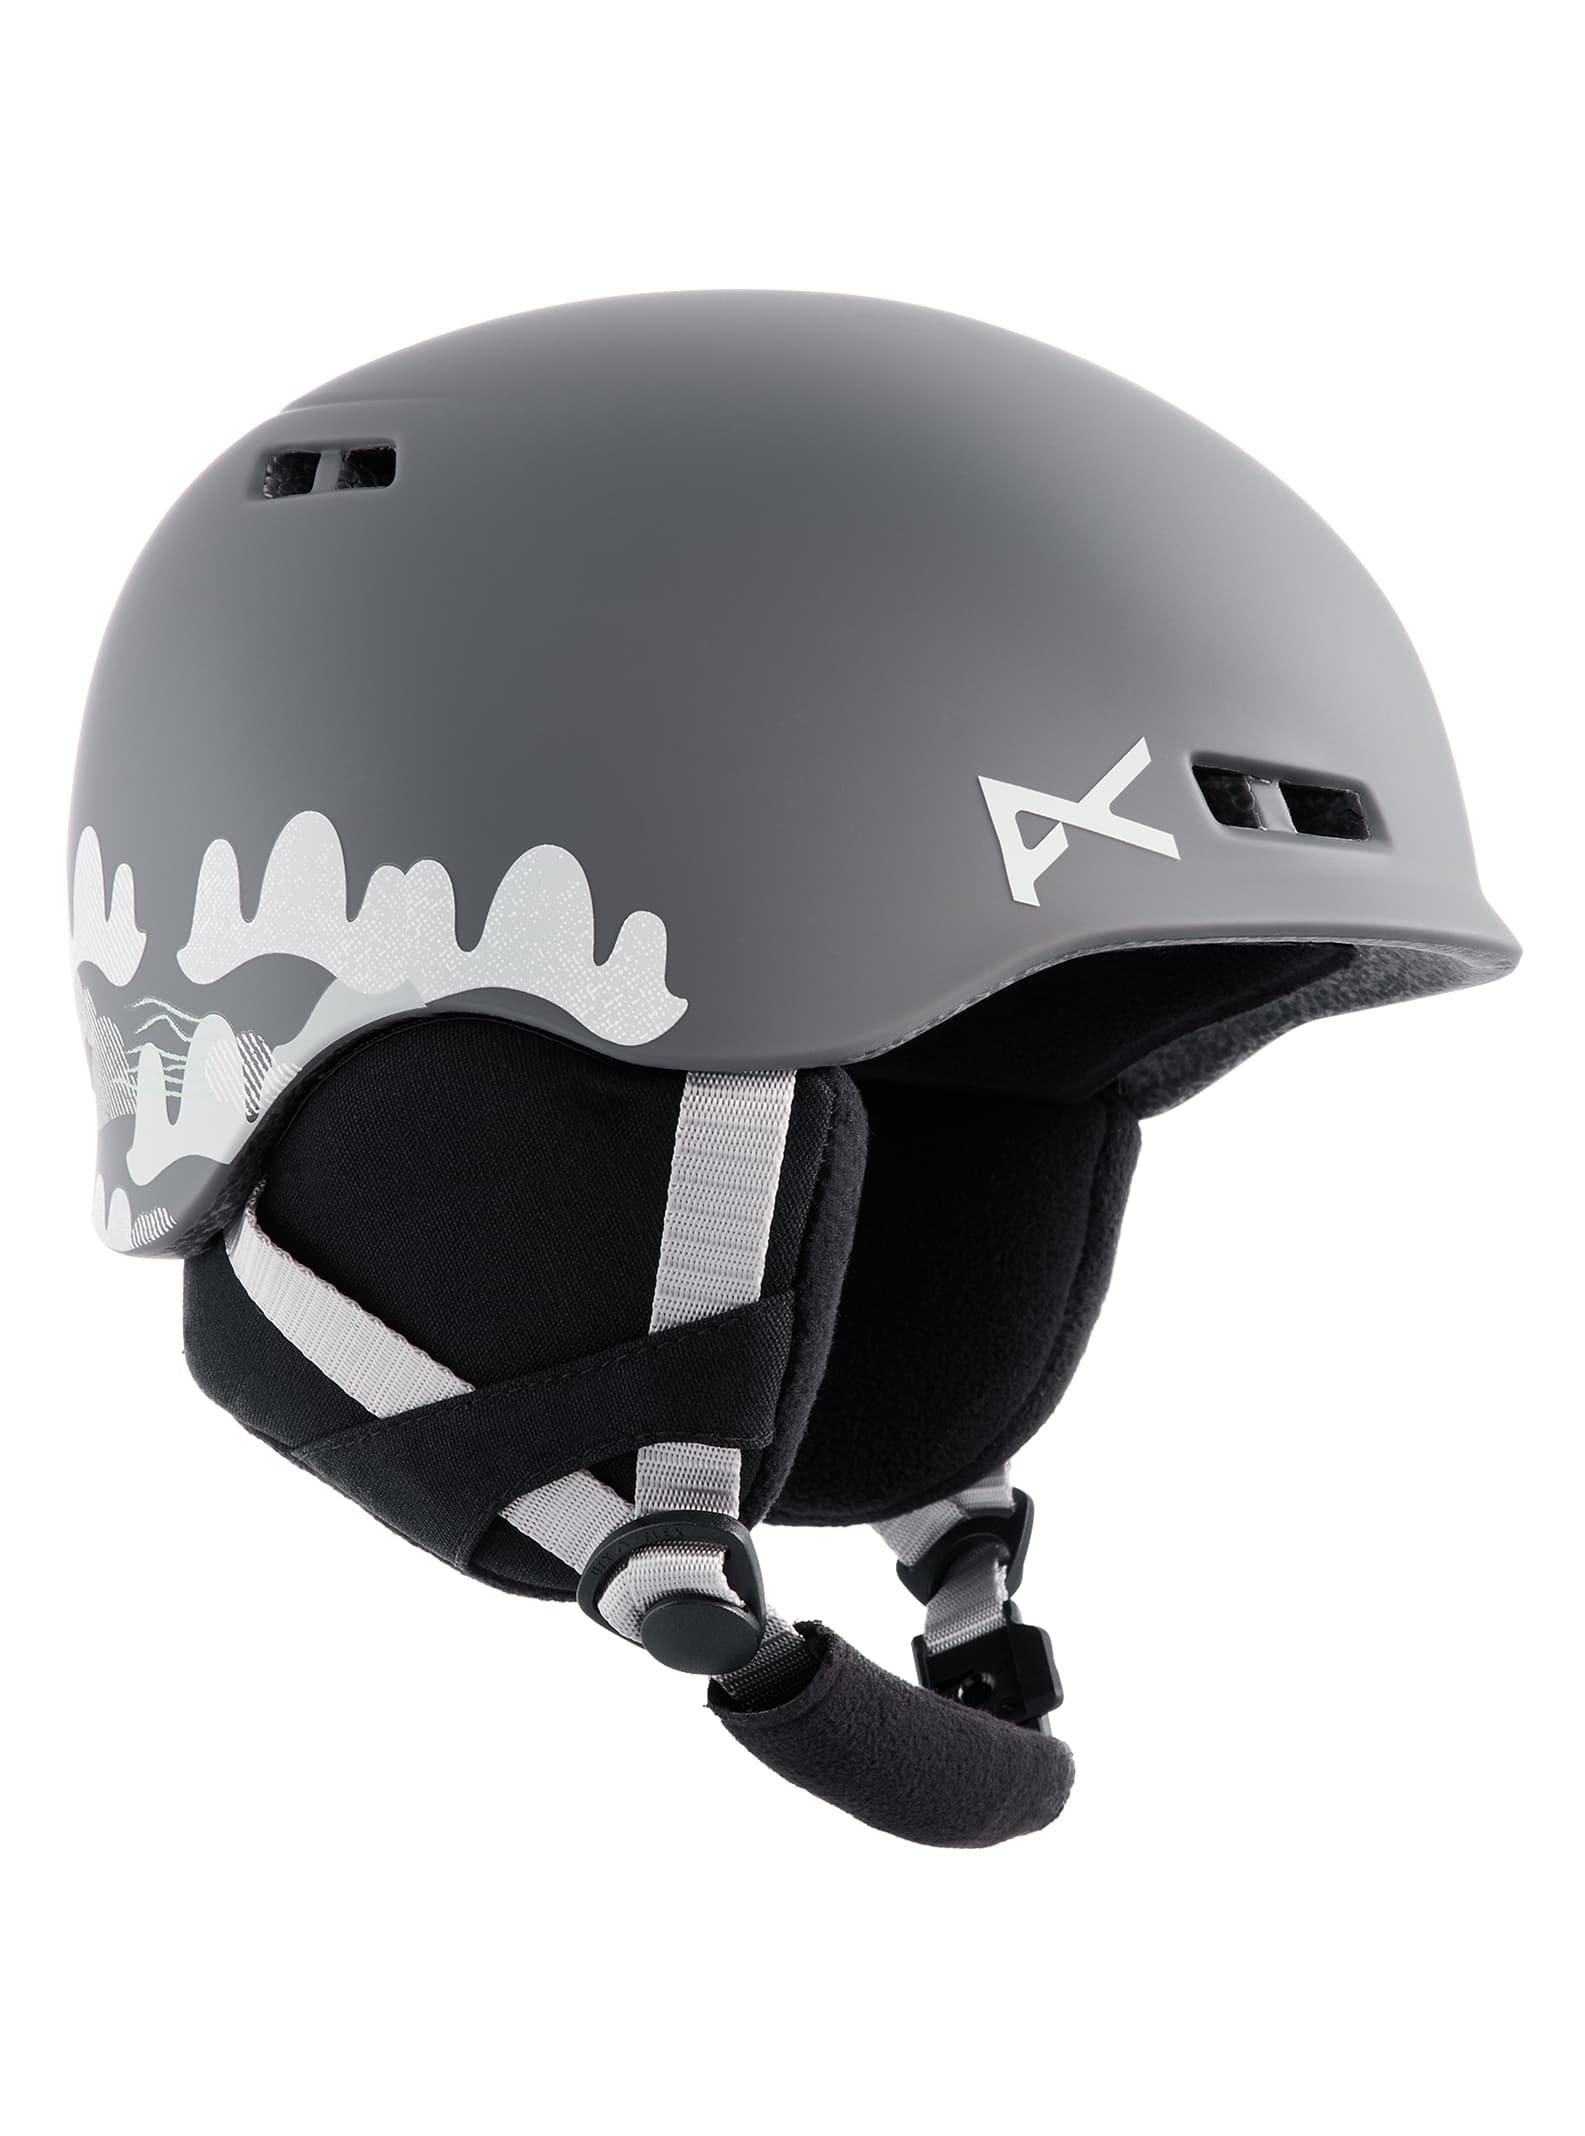 Kids' Anon Burner MIPS® Helmet | Burton.com Winter 2022 US